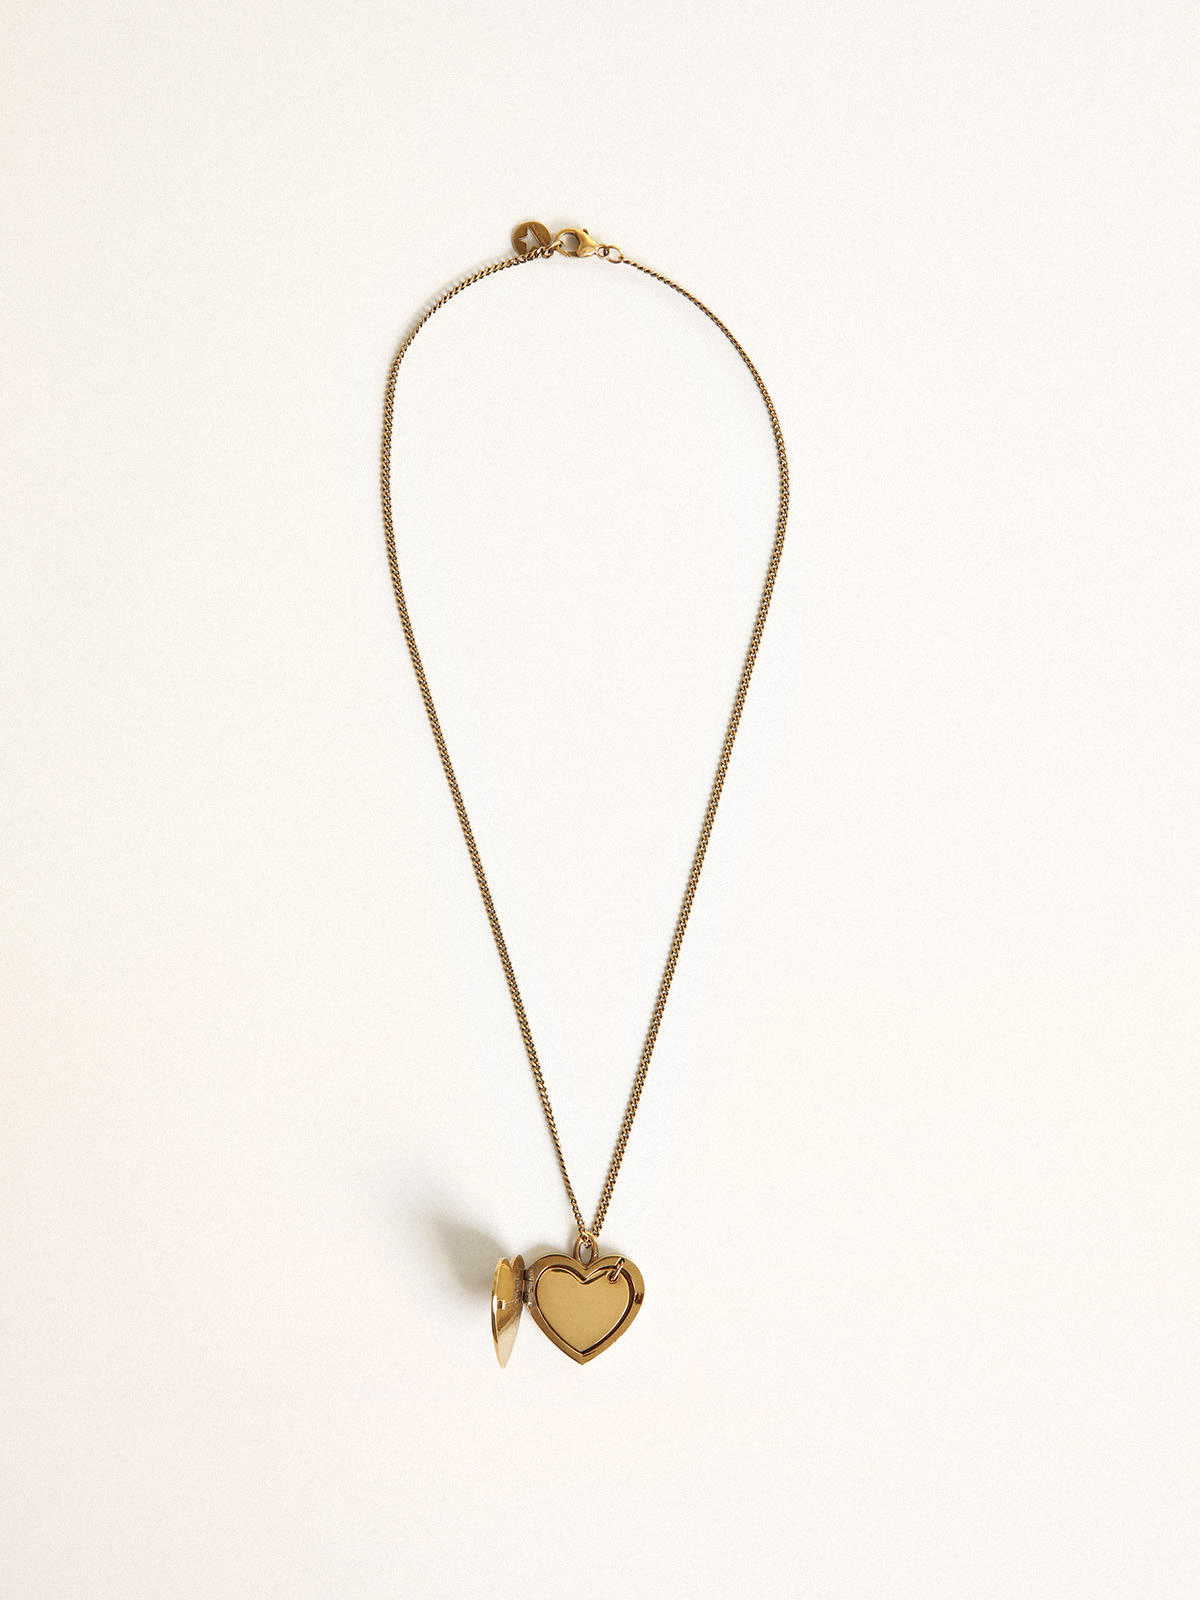 Golden Goose - Altgoldfarbene Halskette mit Herz-Charms in 